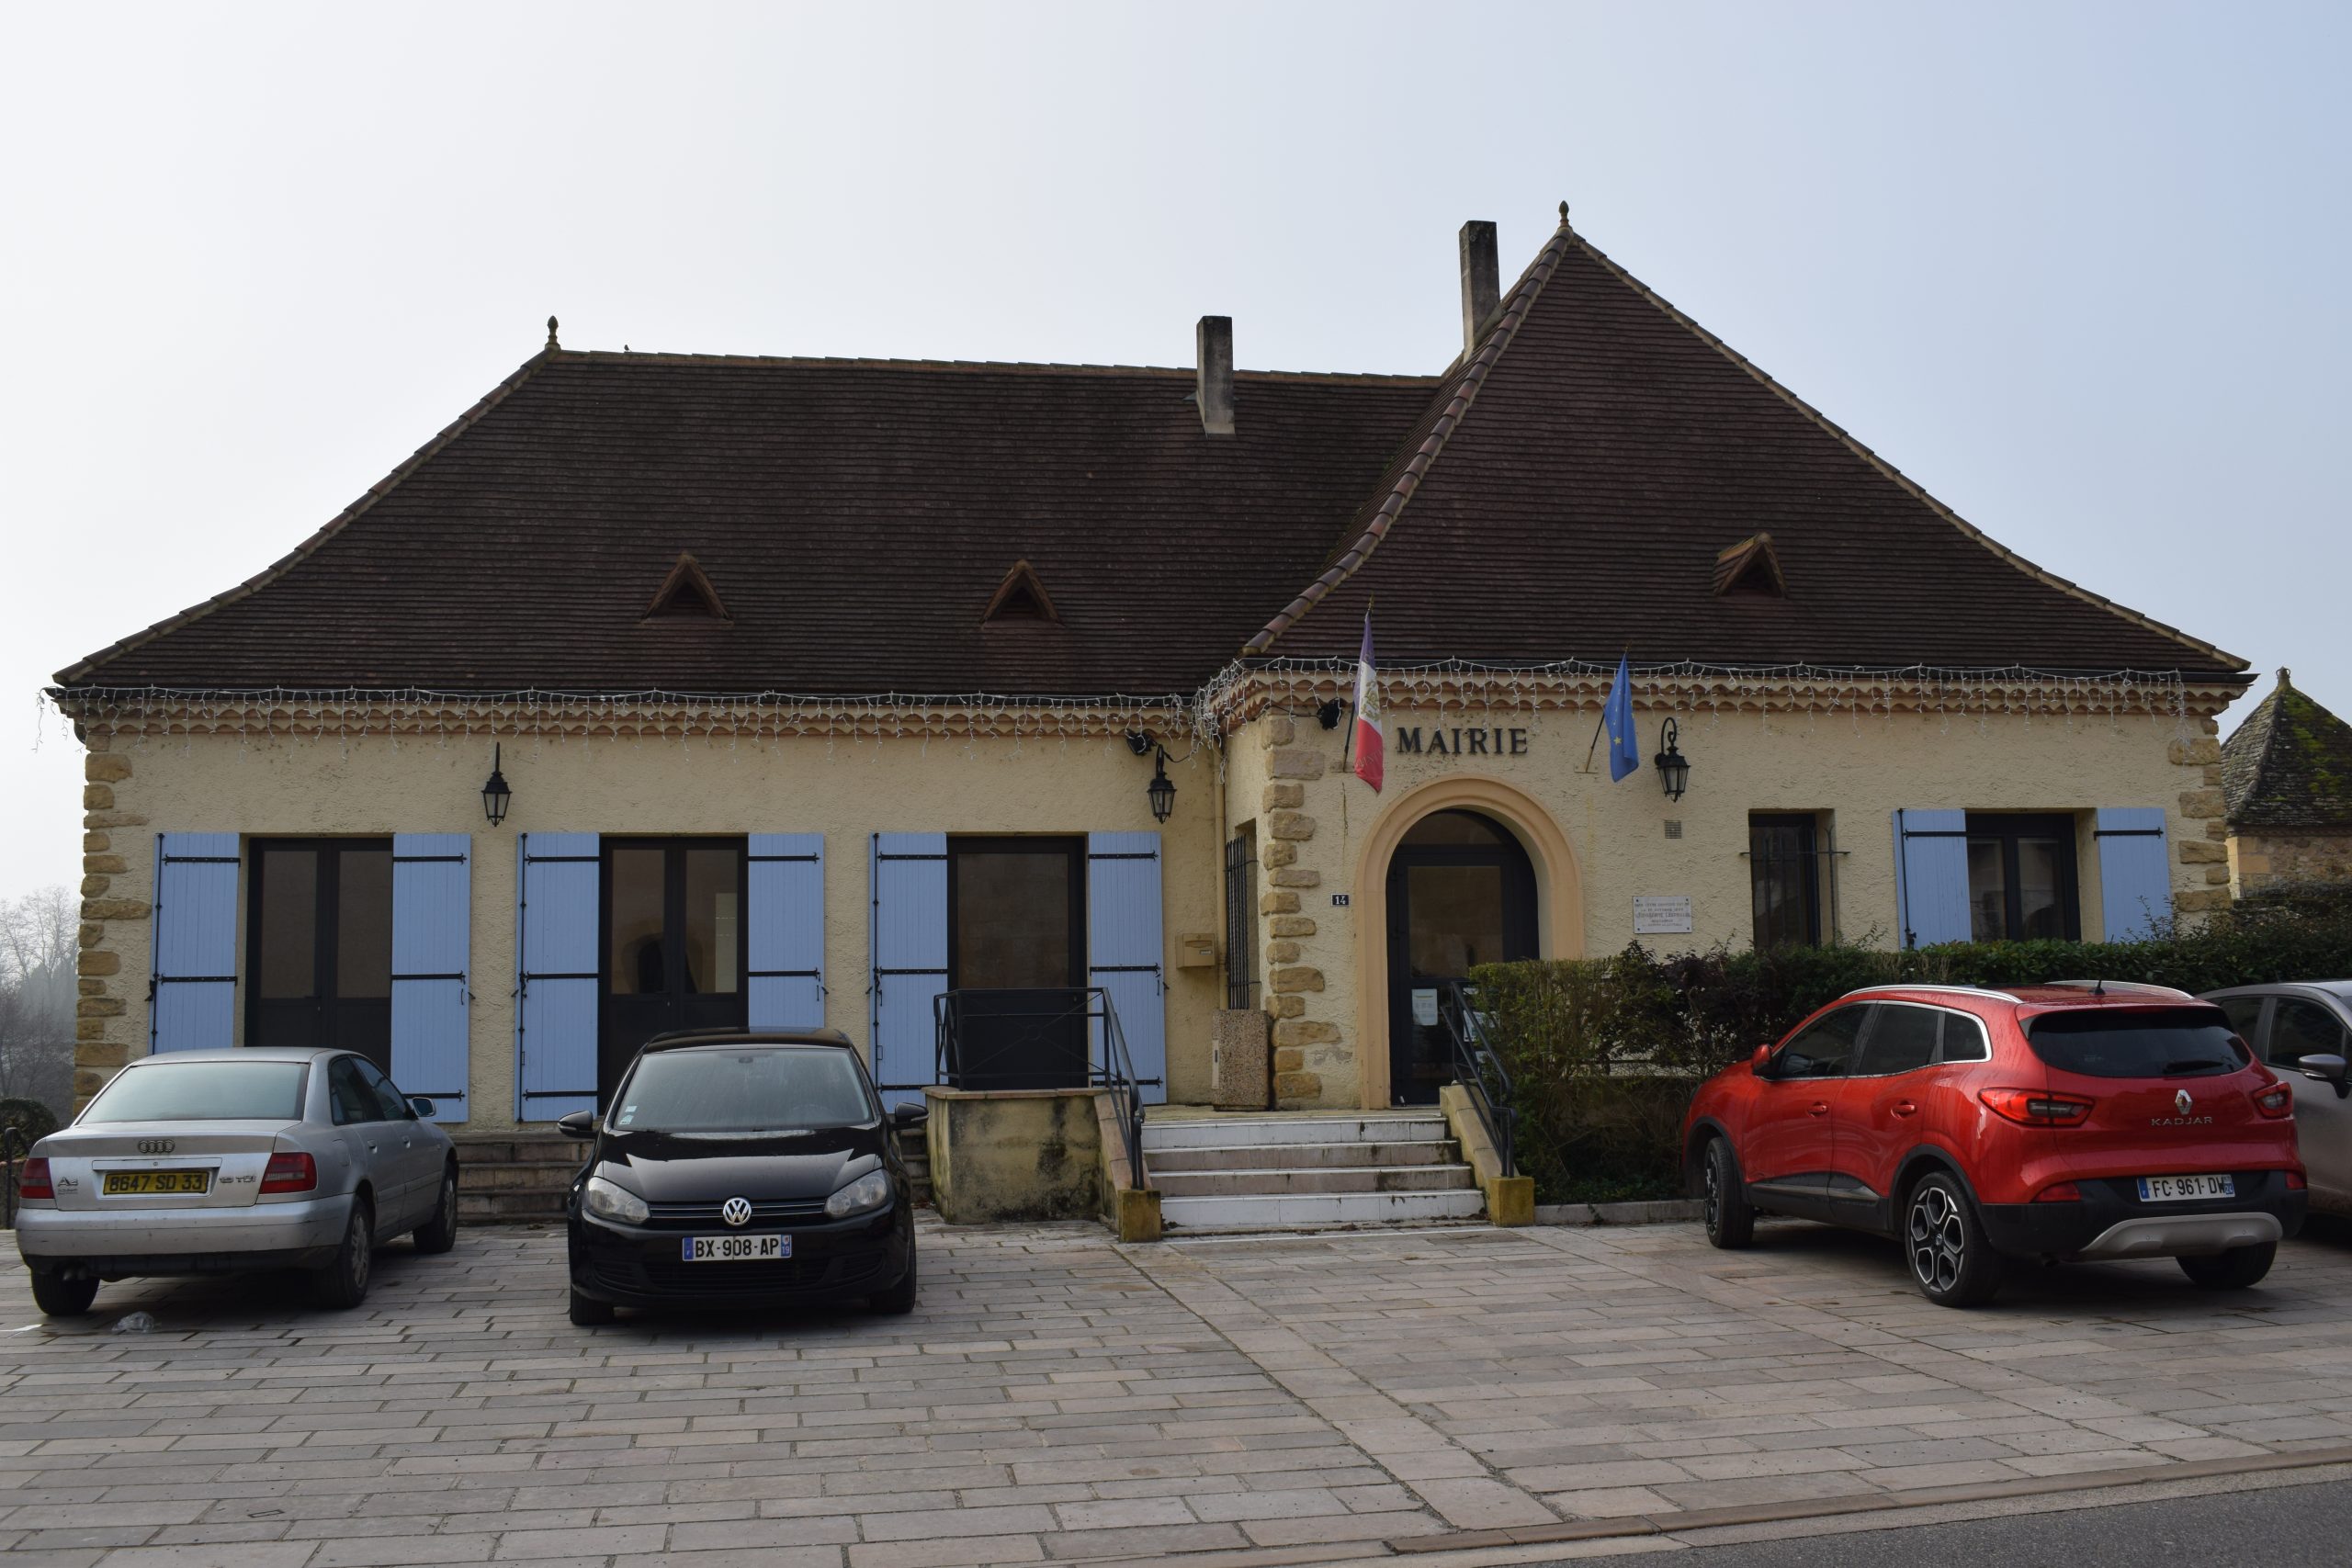 La mairie de Saint-Capraise-de-Lalinde est située le long d'un axe routier passant, reliant Bergerac à Sarlat.